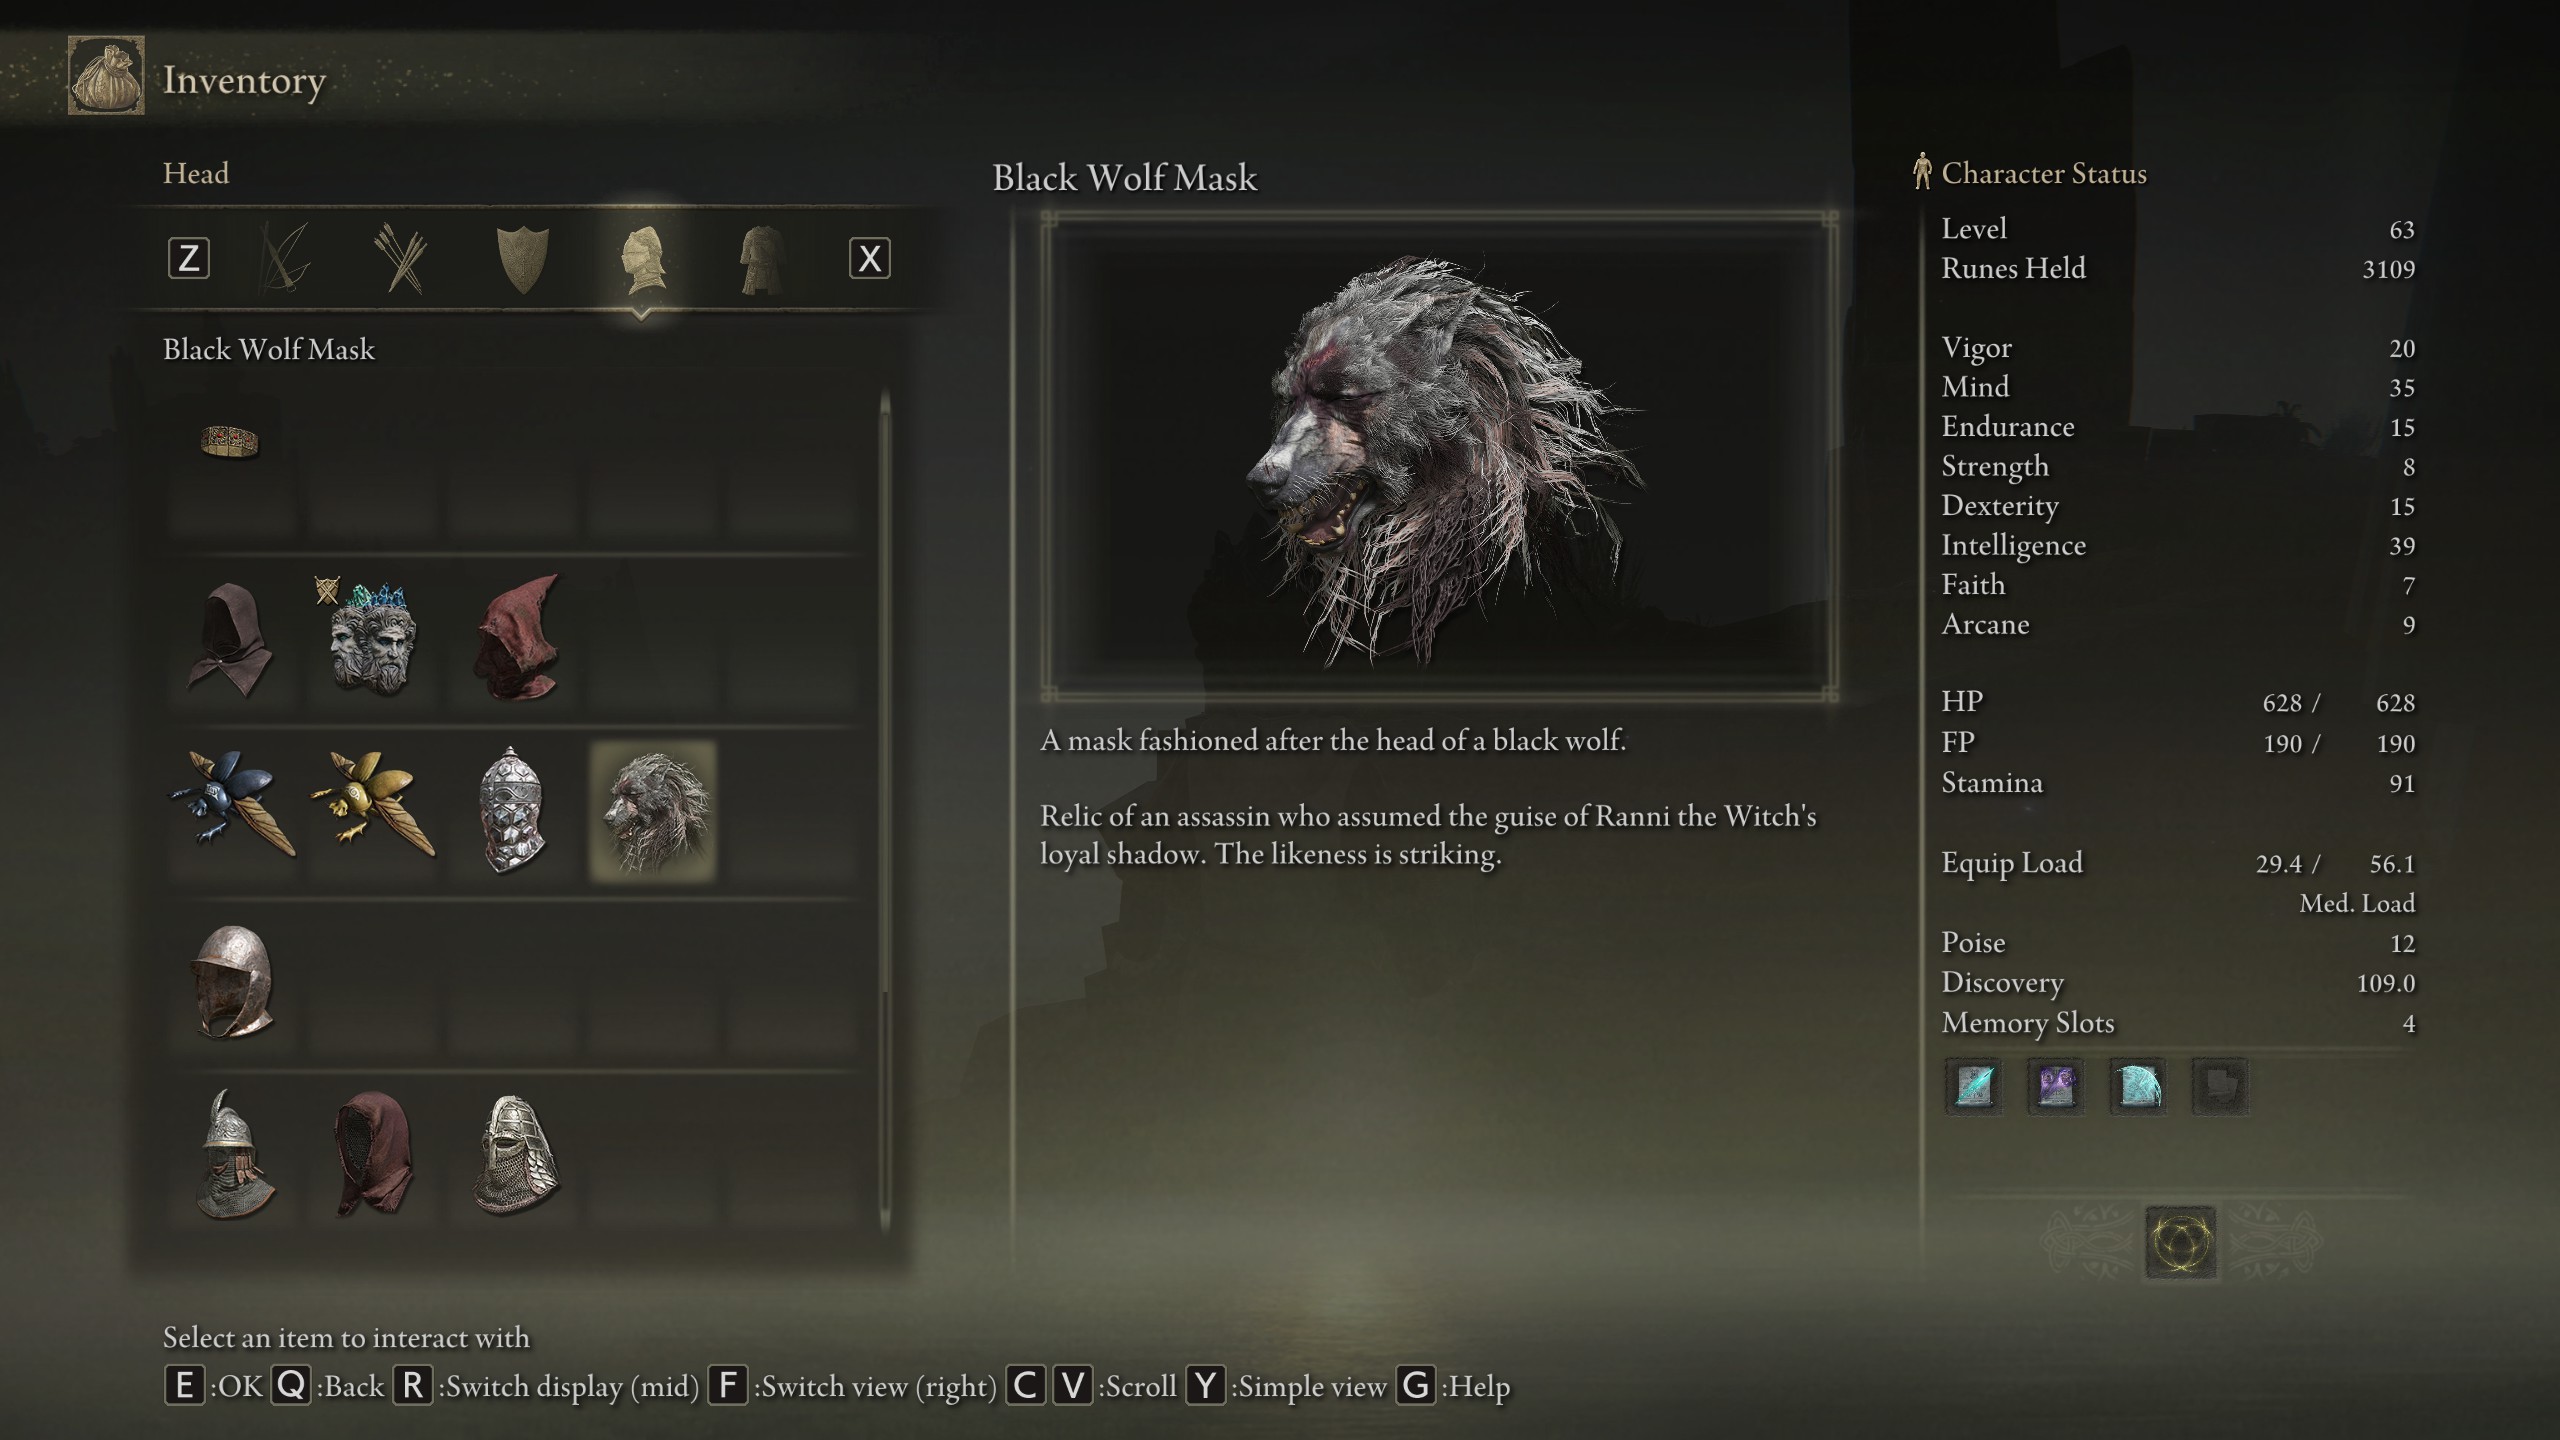 Guida Elden Ring Come ottenere la Black Wolf Mask (Maschera da Lupo